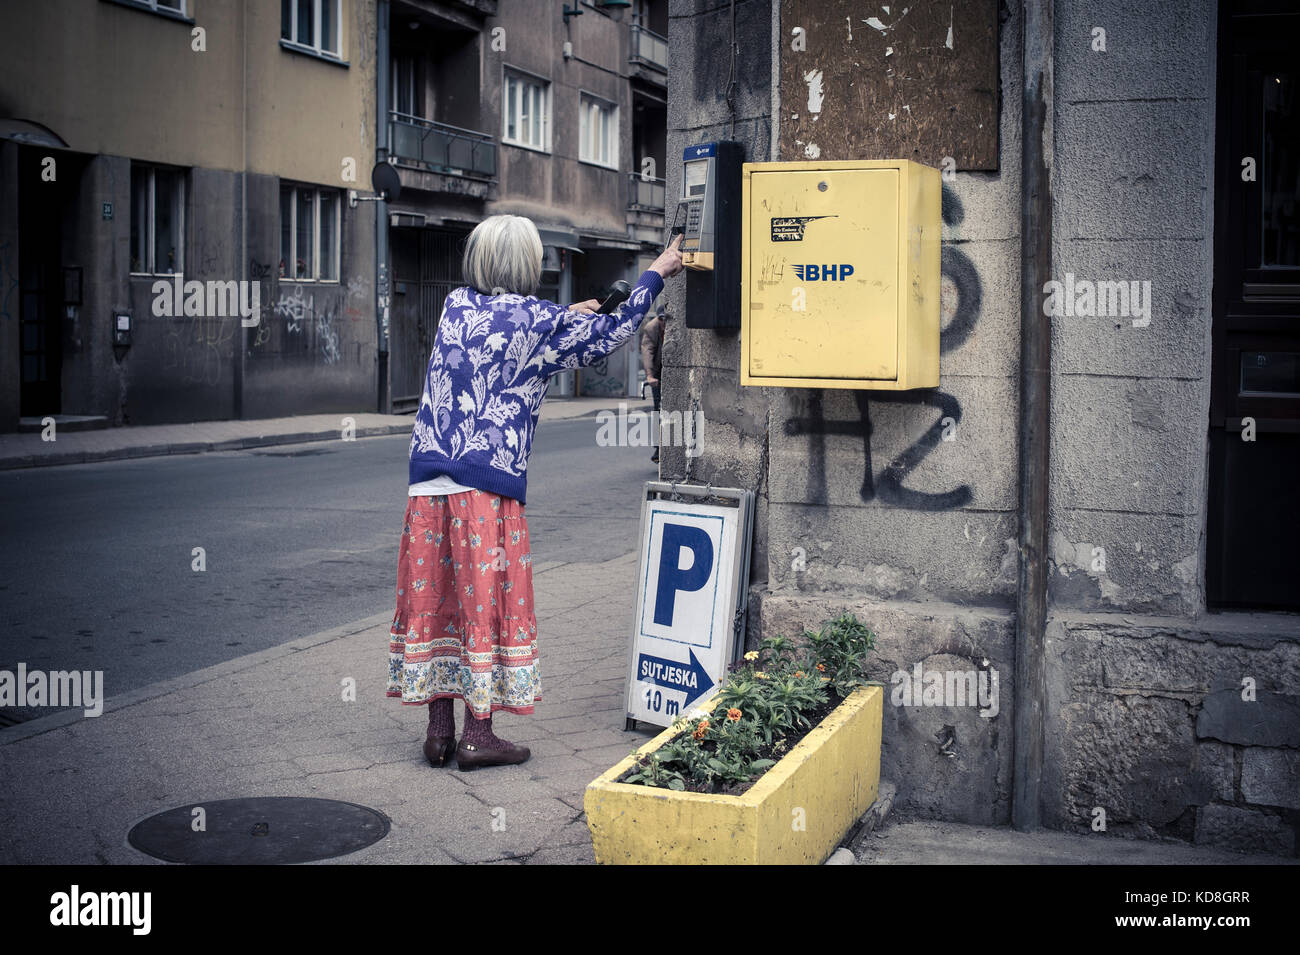 Une personne agée utilizzare le téléphone pubblico à Sarajevo en mai 2015. Una vecchia signora usa il telefono pubblico a Sarajevo, maggio 2015. Foto Stock